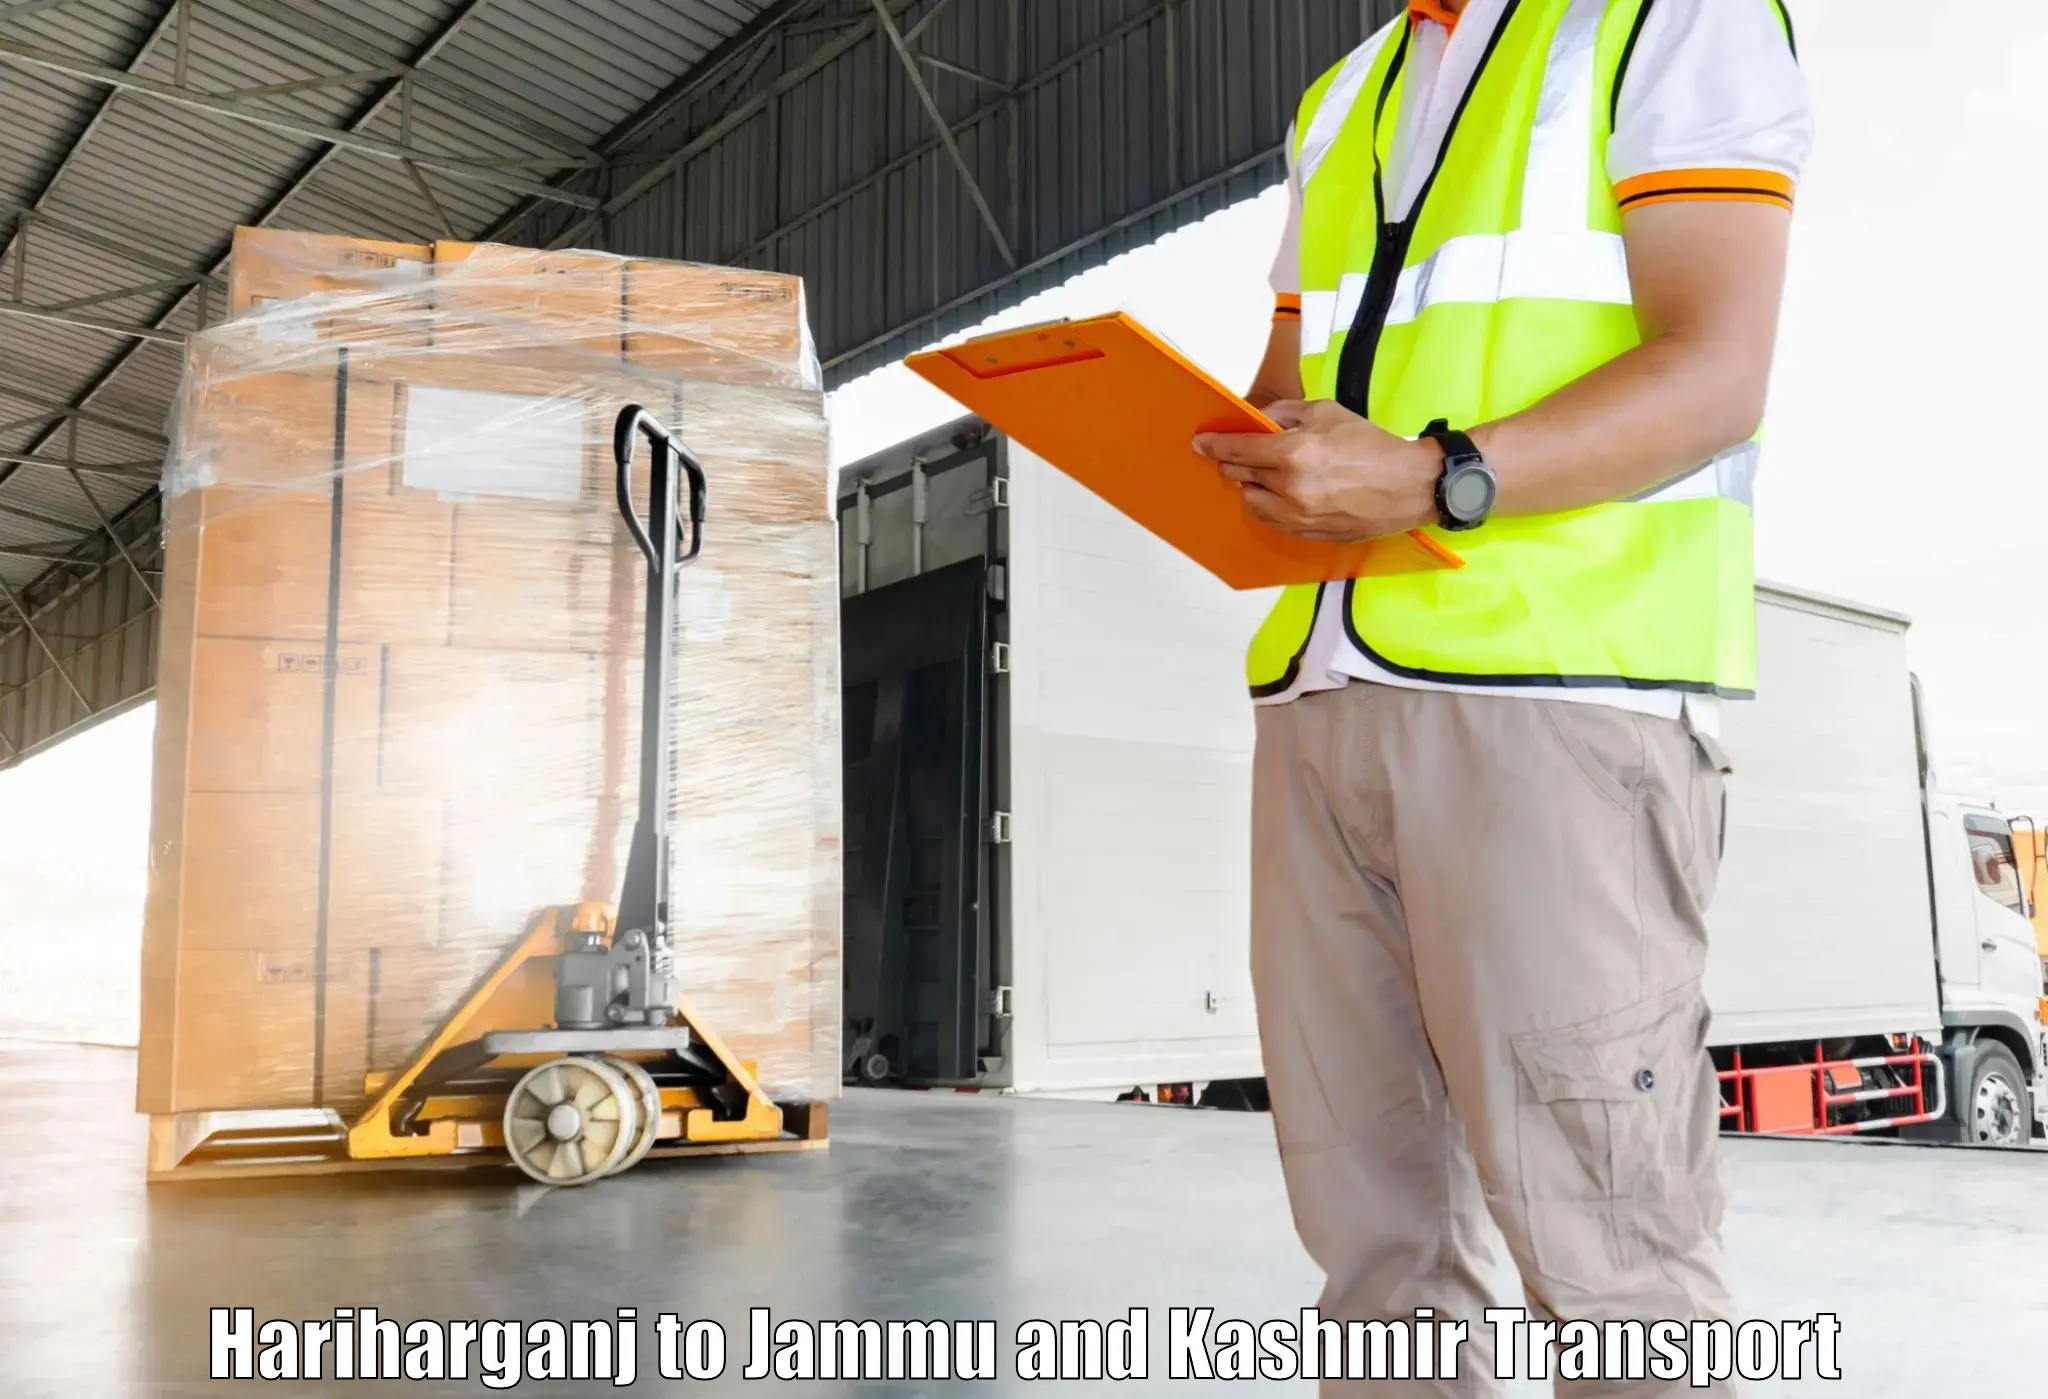 Air cargo transport services Hariharganj to Jammu